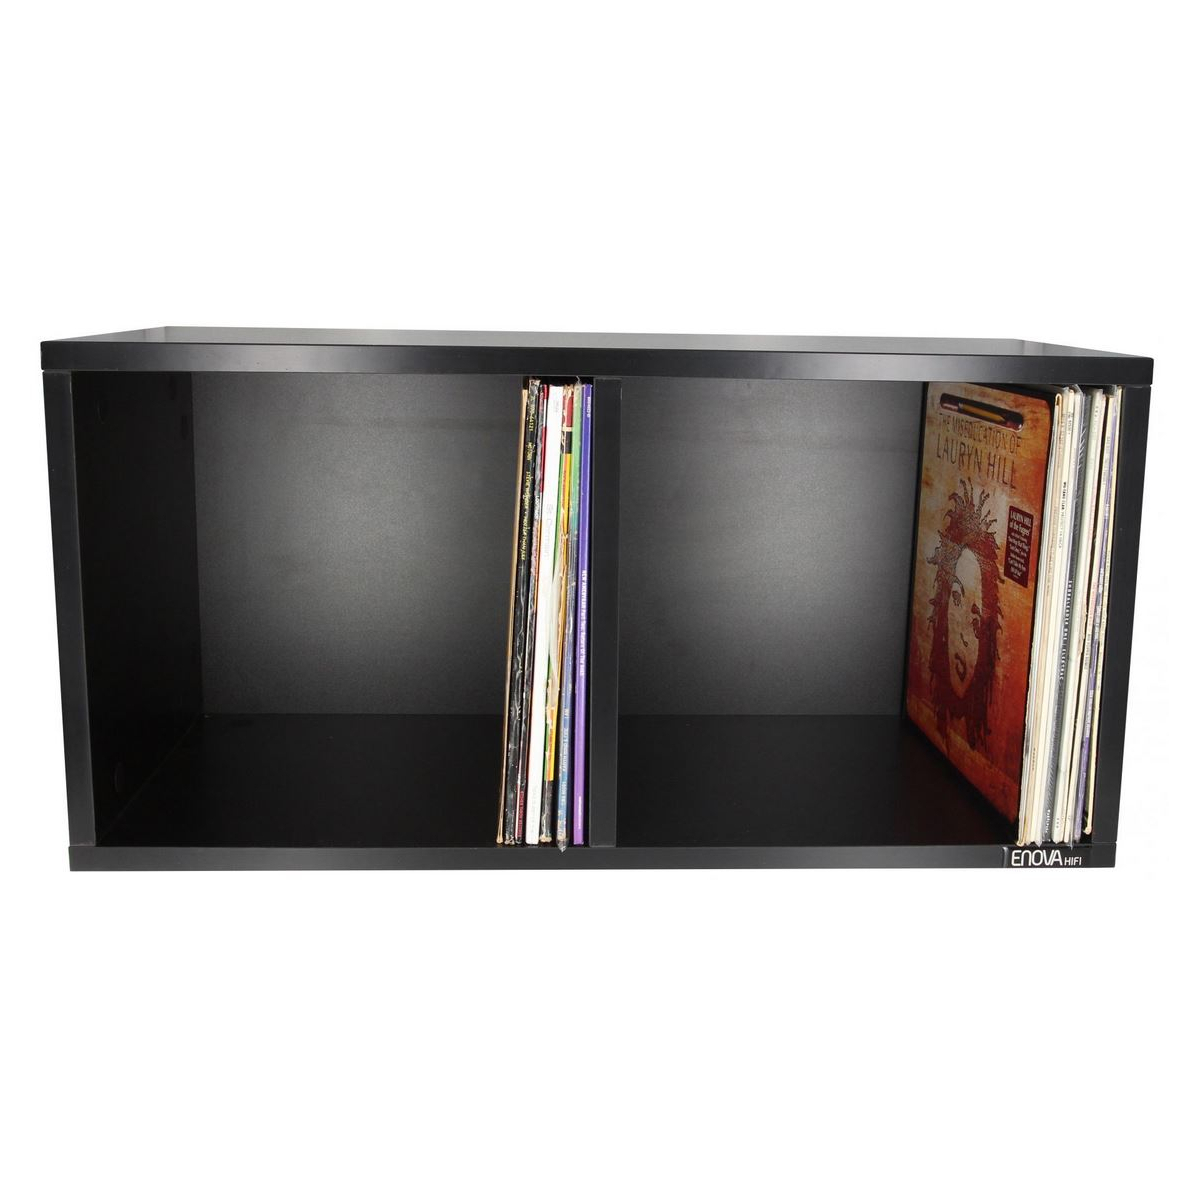 POCHETTE DISQUE 33T - PAV 50 - Meubles et pochettes de disques - Energyson